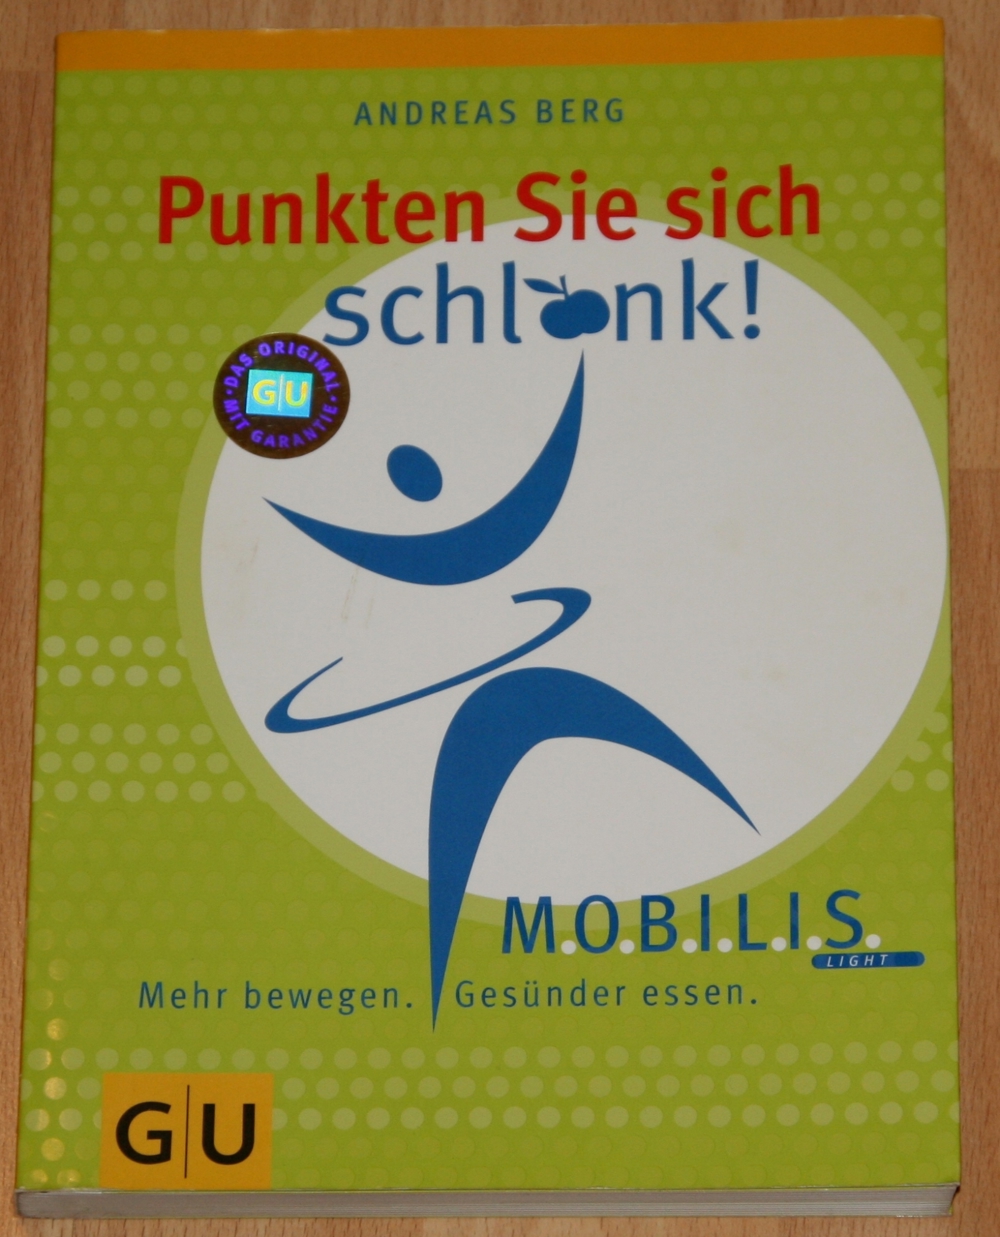 NEU - Buch "MOBILIS - Punkten Sie sich schlank" von Andreas Berg